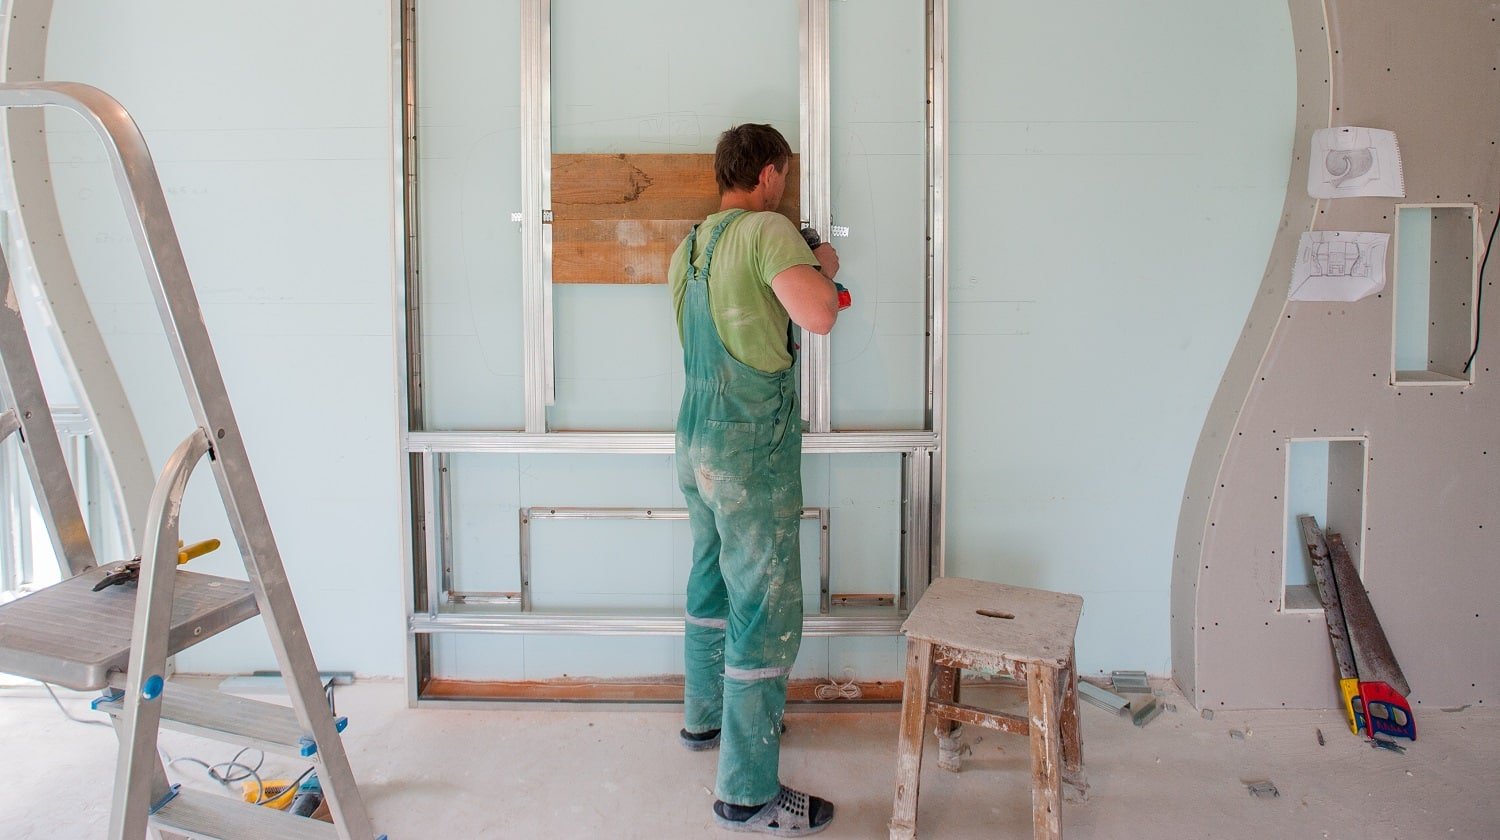 Construction worker wear safety uniform installation ceiling work.